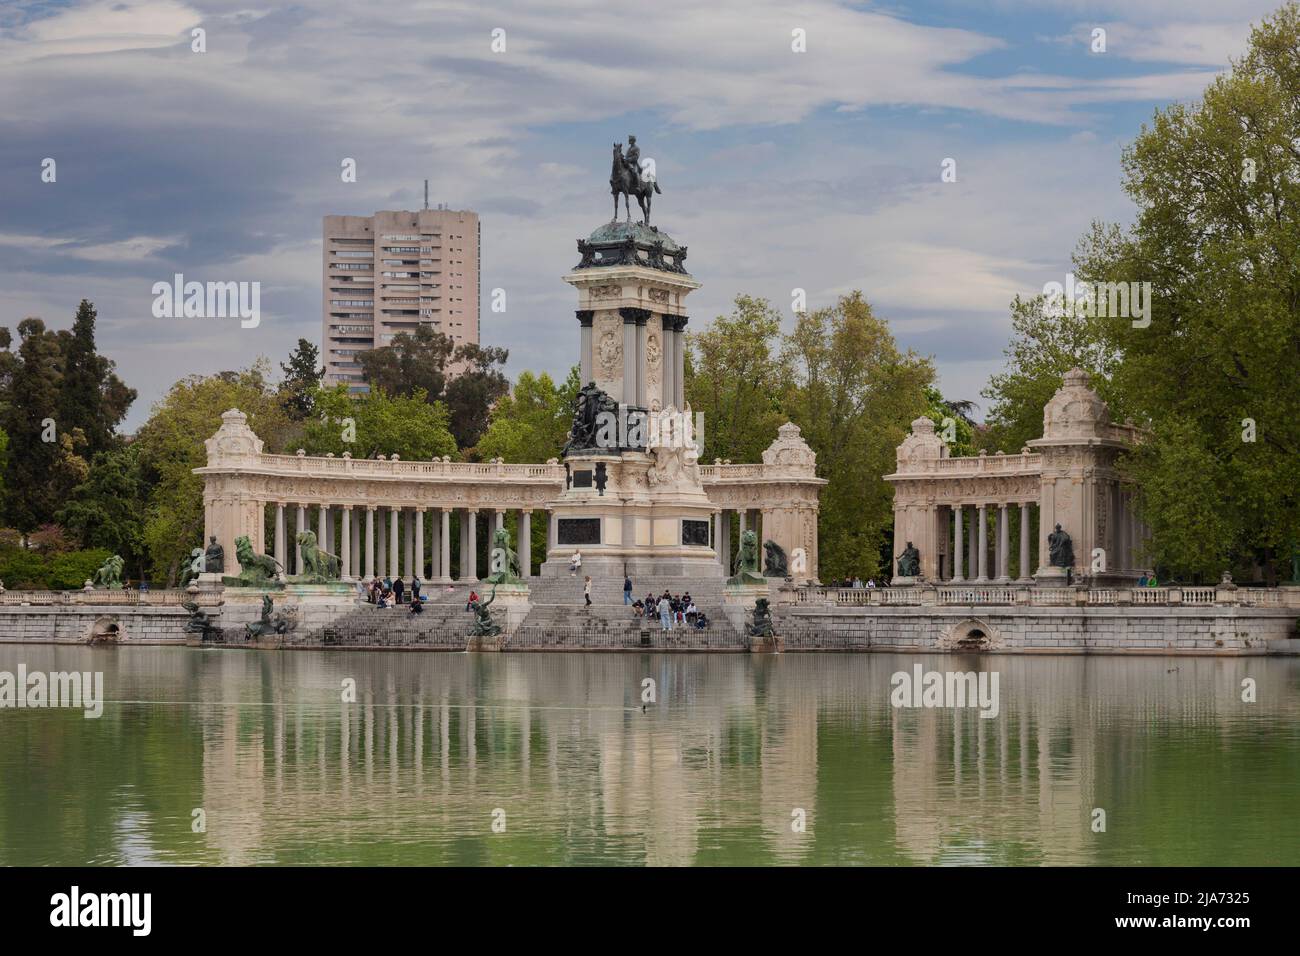 Visitantes del popular monumento a Alfonso XII, en el lago artificial del parque El Retiro, en el centro de Madrid, España. Se completó en 1922. Foto de stock